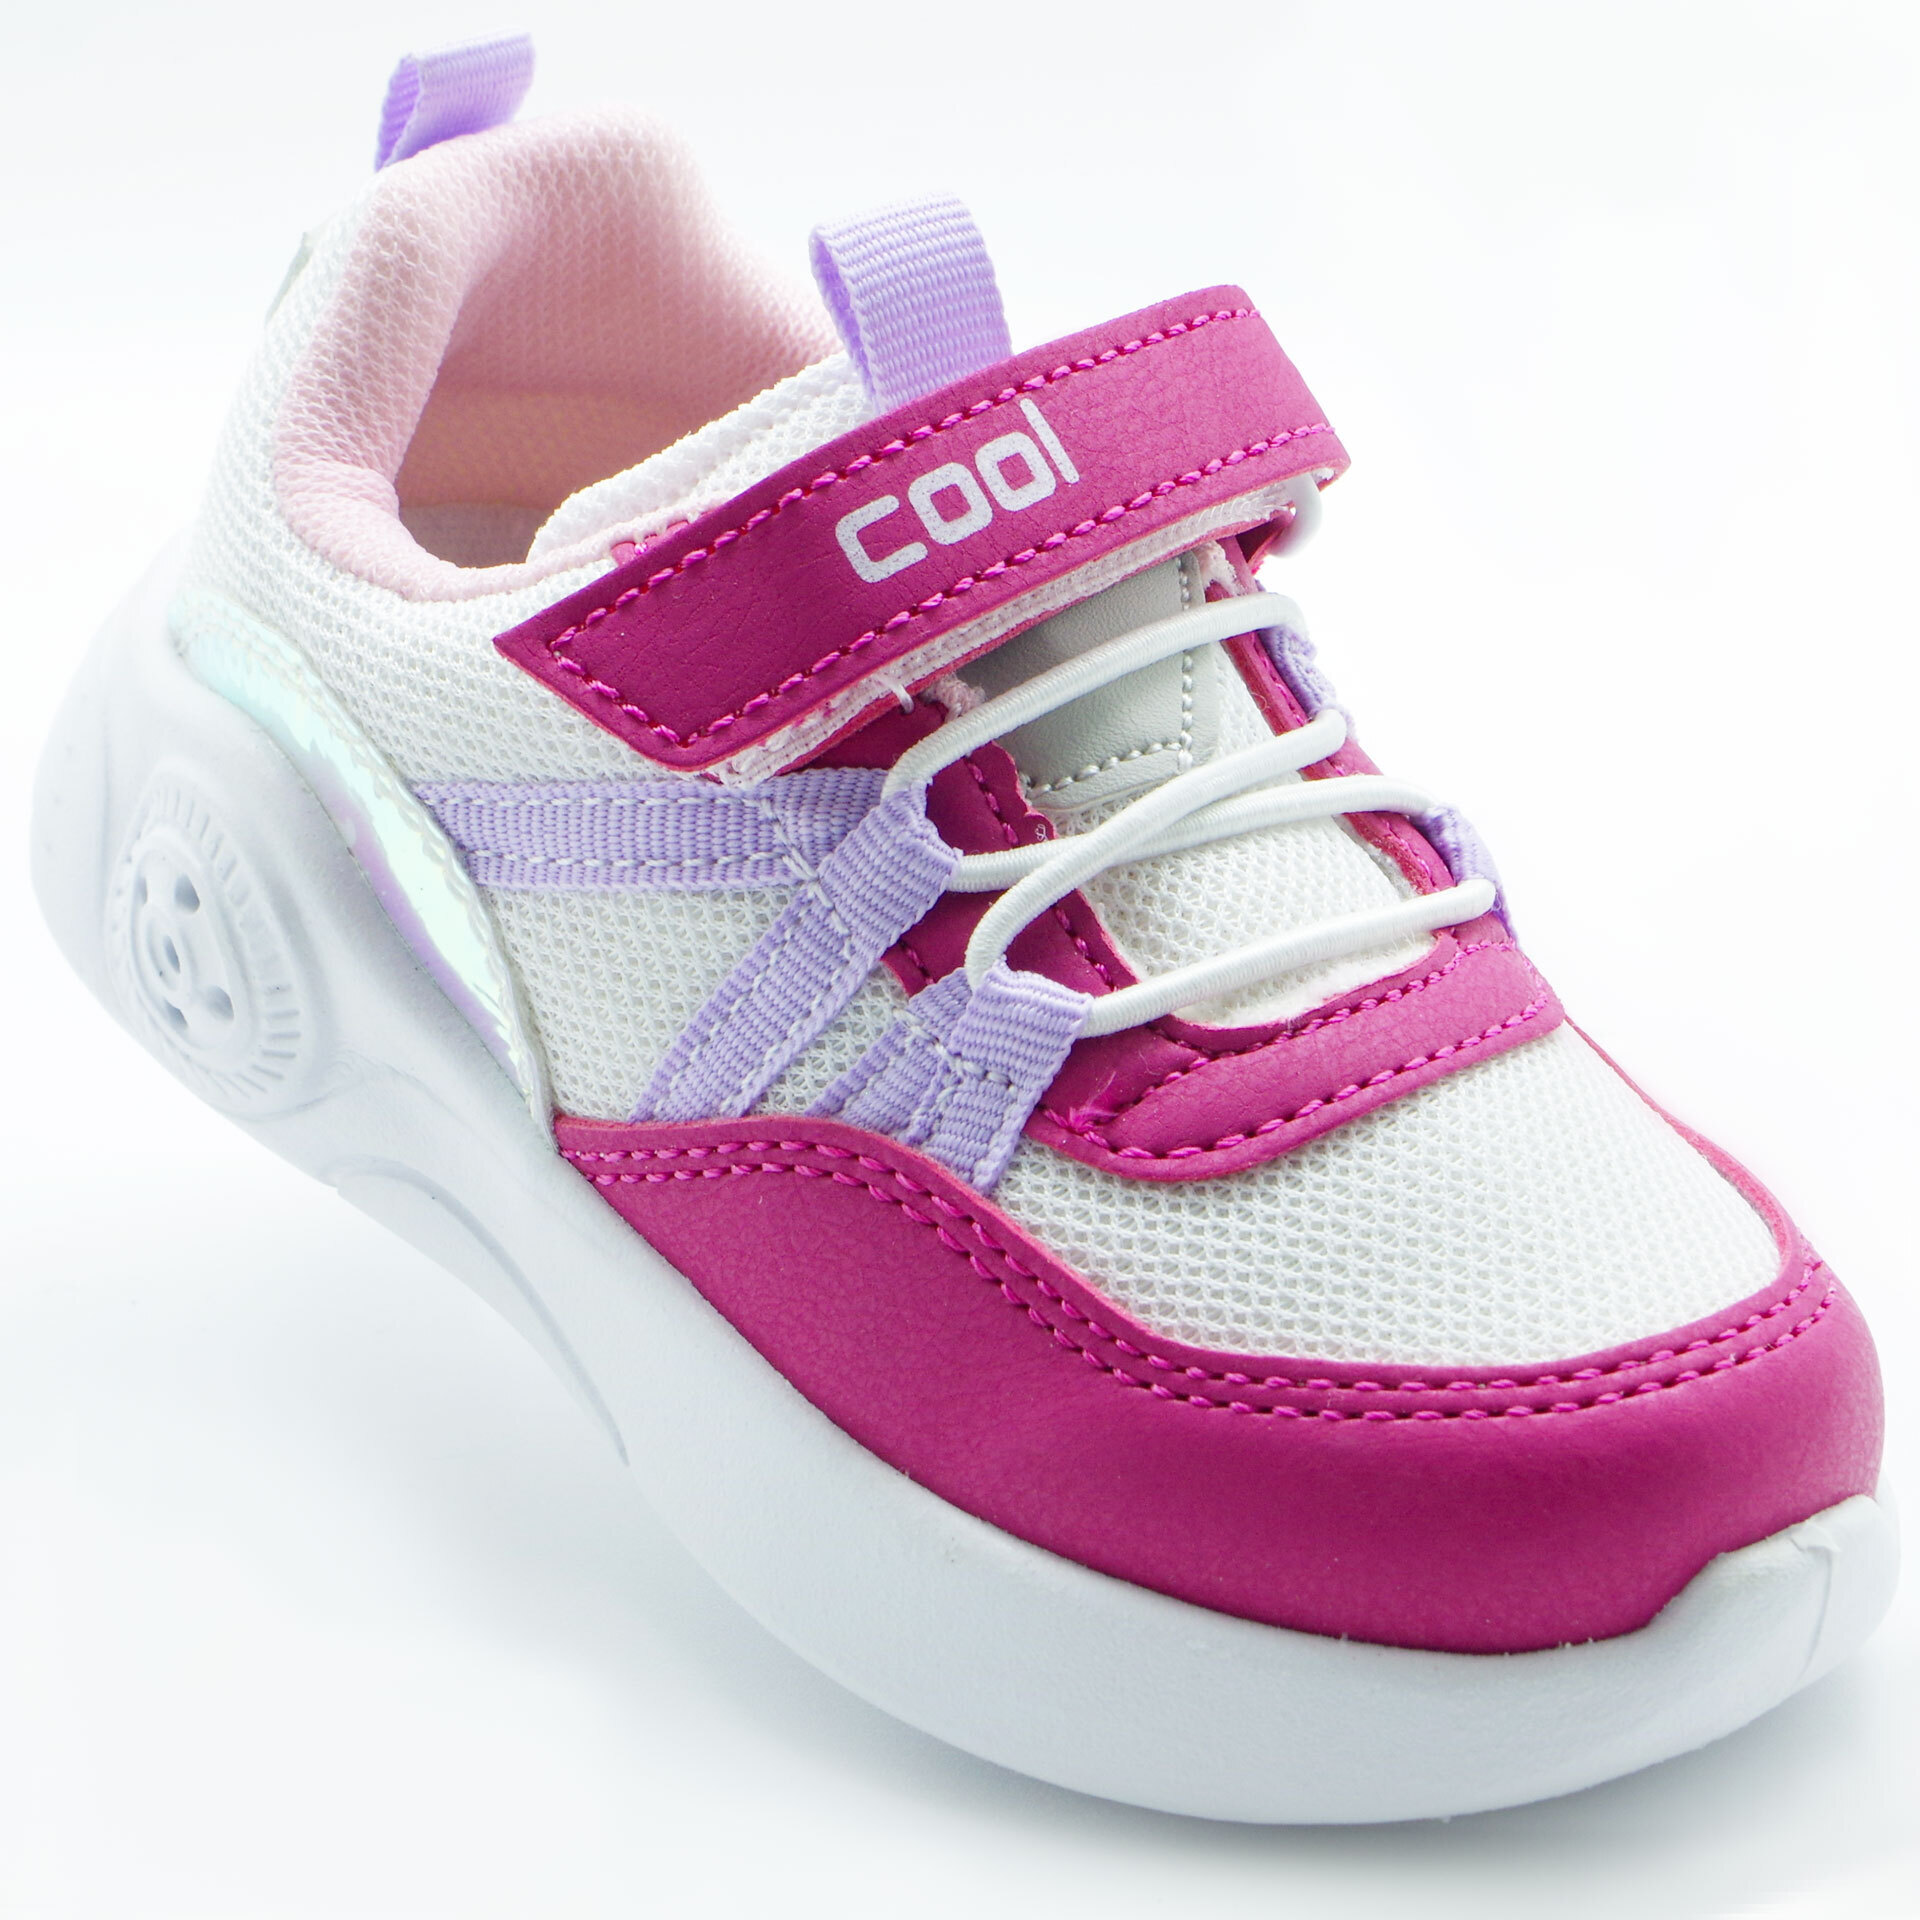 LED Кроссовки детские (2198) материал Текстиль, цвет Розовый  для девочки 22-25 размеры – Sole Kids, Днепр